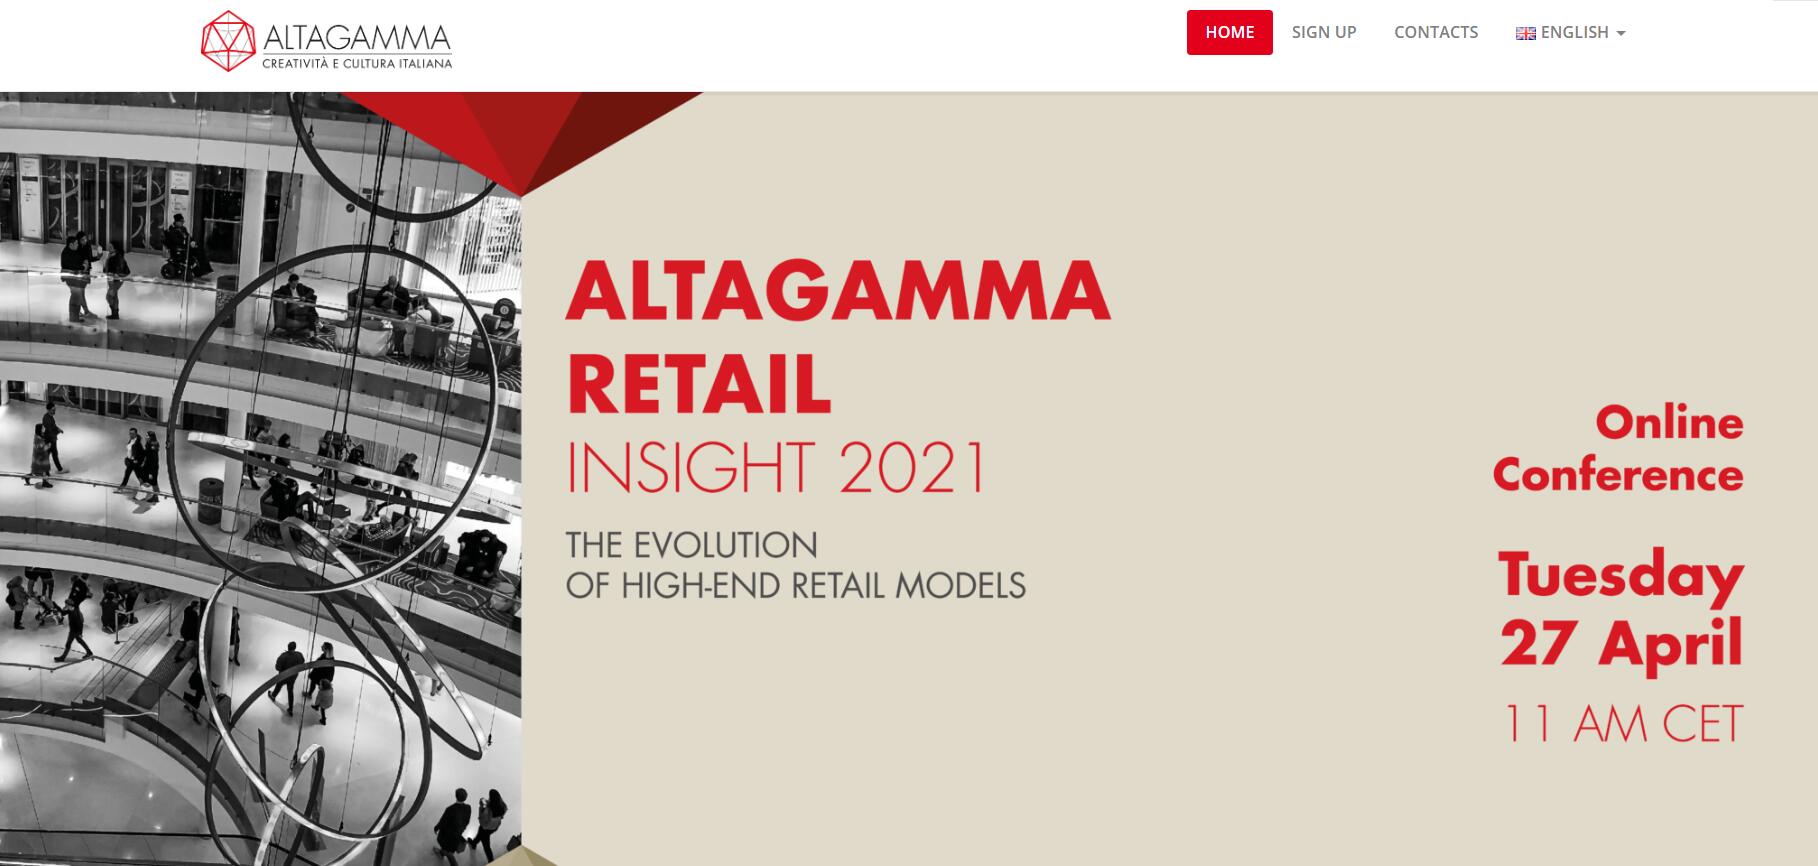 意大利奢侈品牌协会 Altagamma 最新报告：后疫情时代奢侈品零售将如何演变？